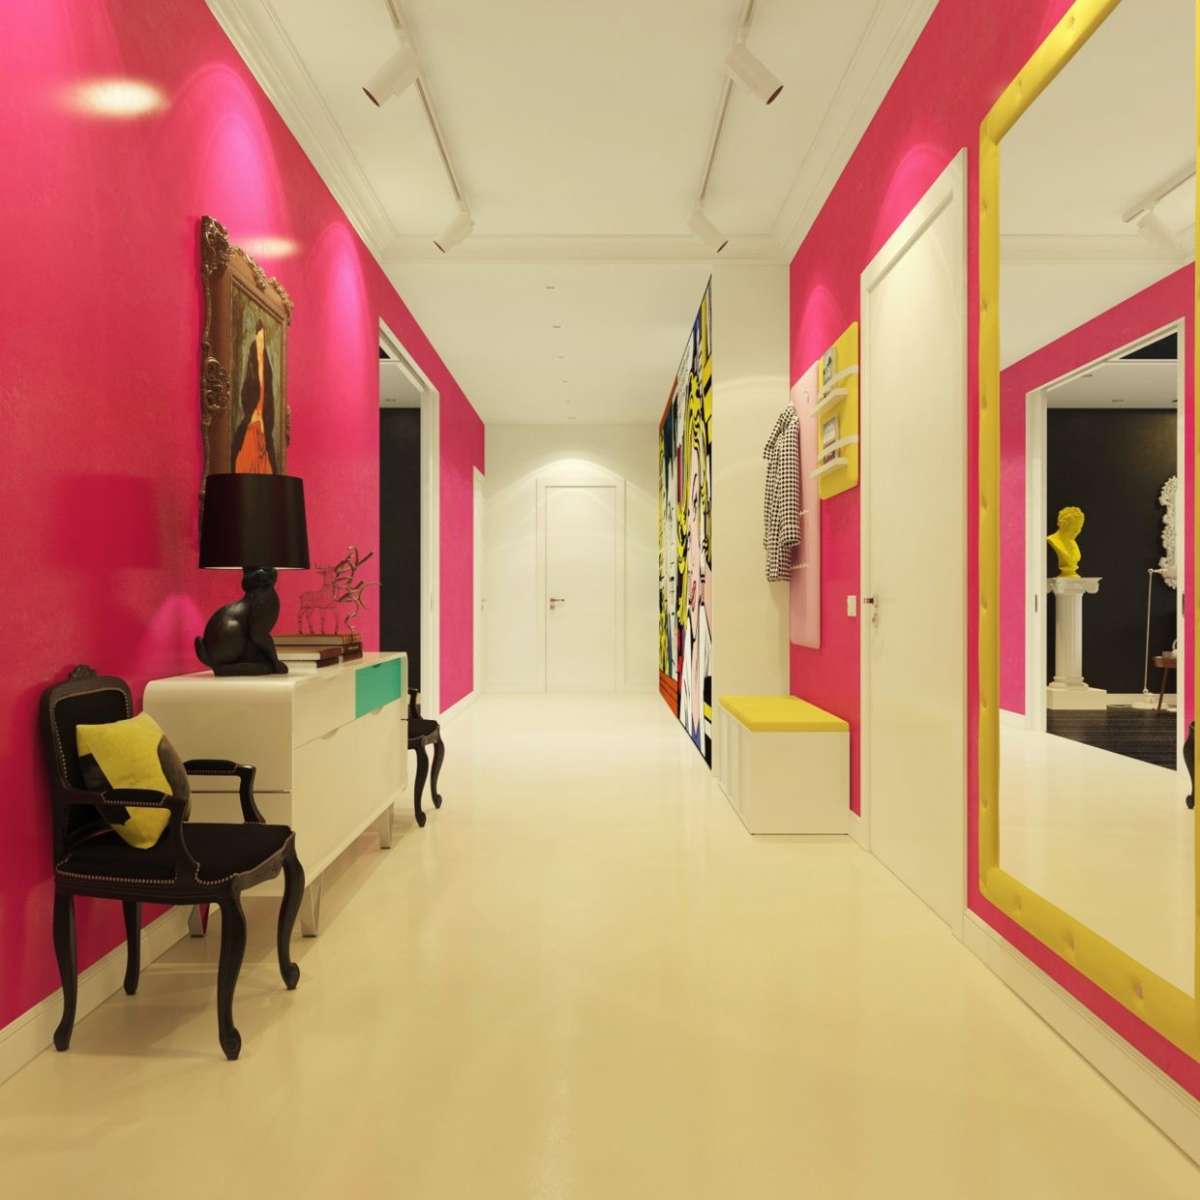 Corridoio rosa e giallo